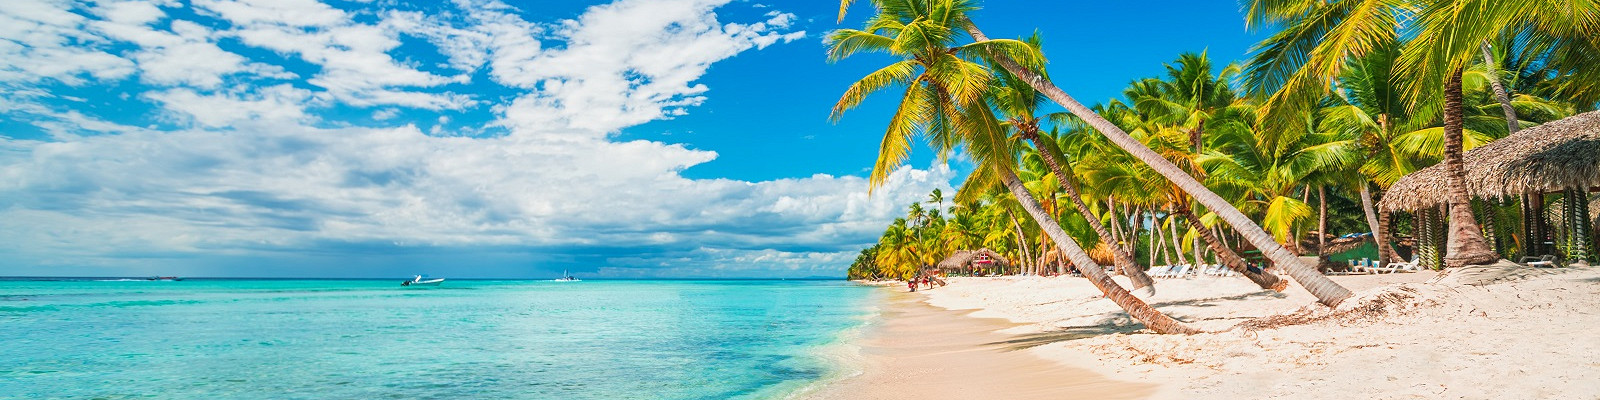 Отдых в Доминикане: карибский рай, который вас удивит